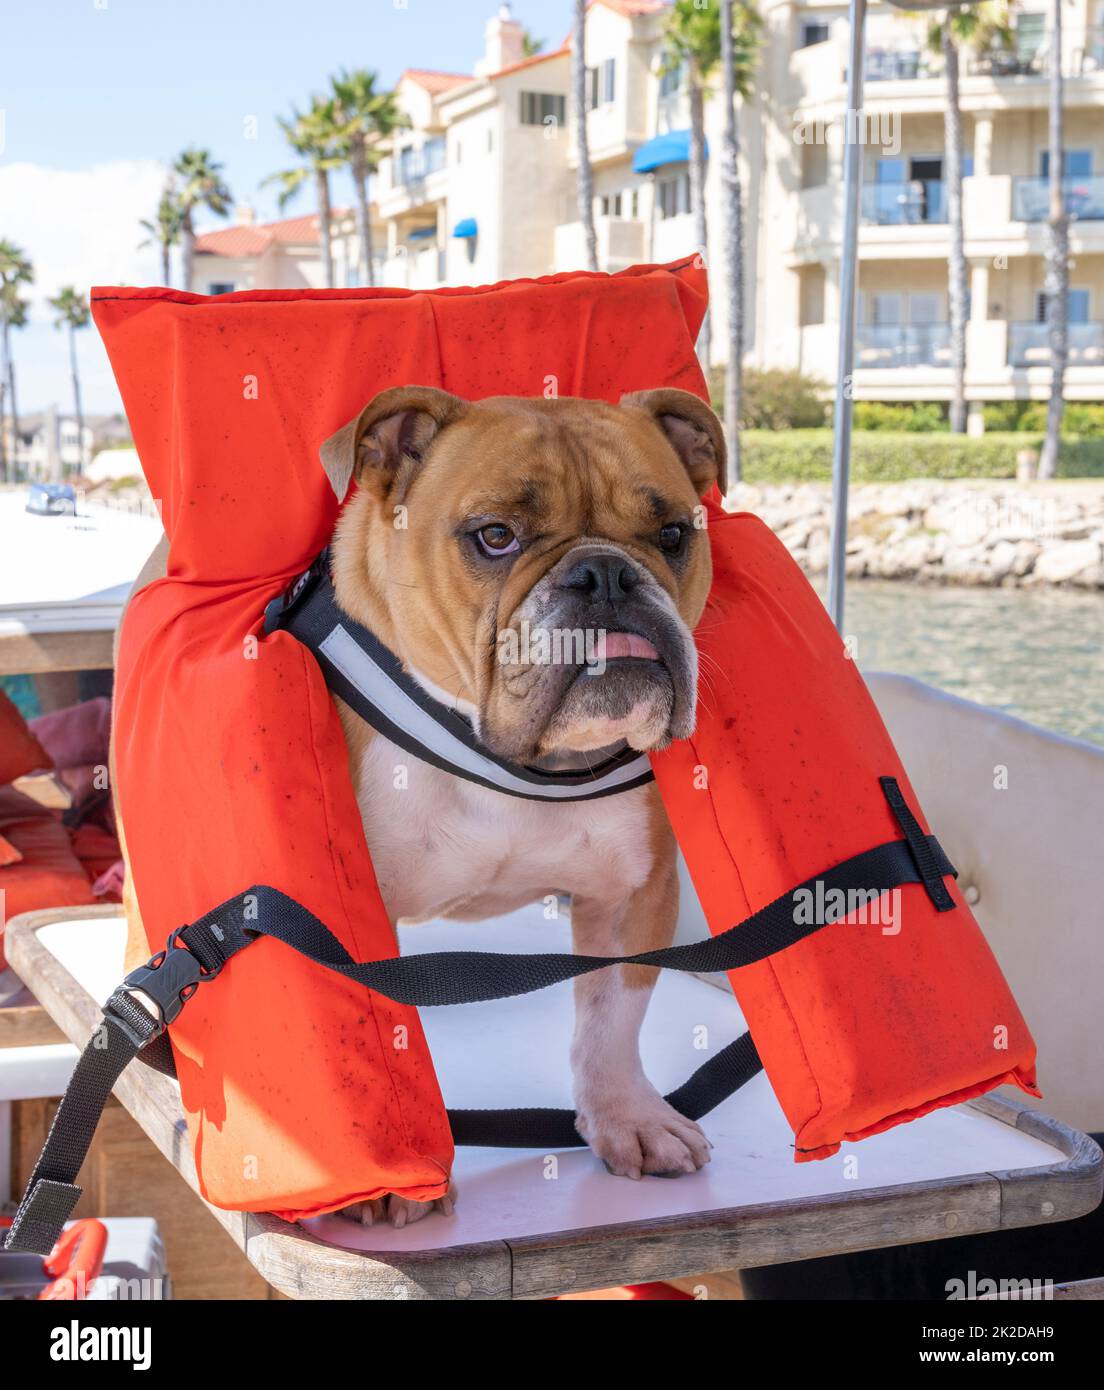 Englische Bulldogge, die zuerst Sicherheit in einer orangefarbenen Rettungsweste auf einem Boot übt Stockfoto